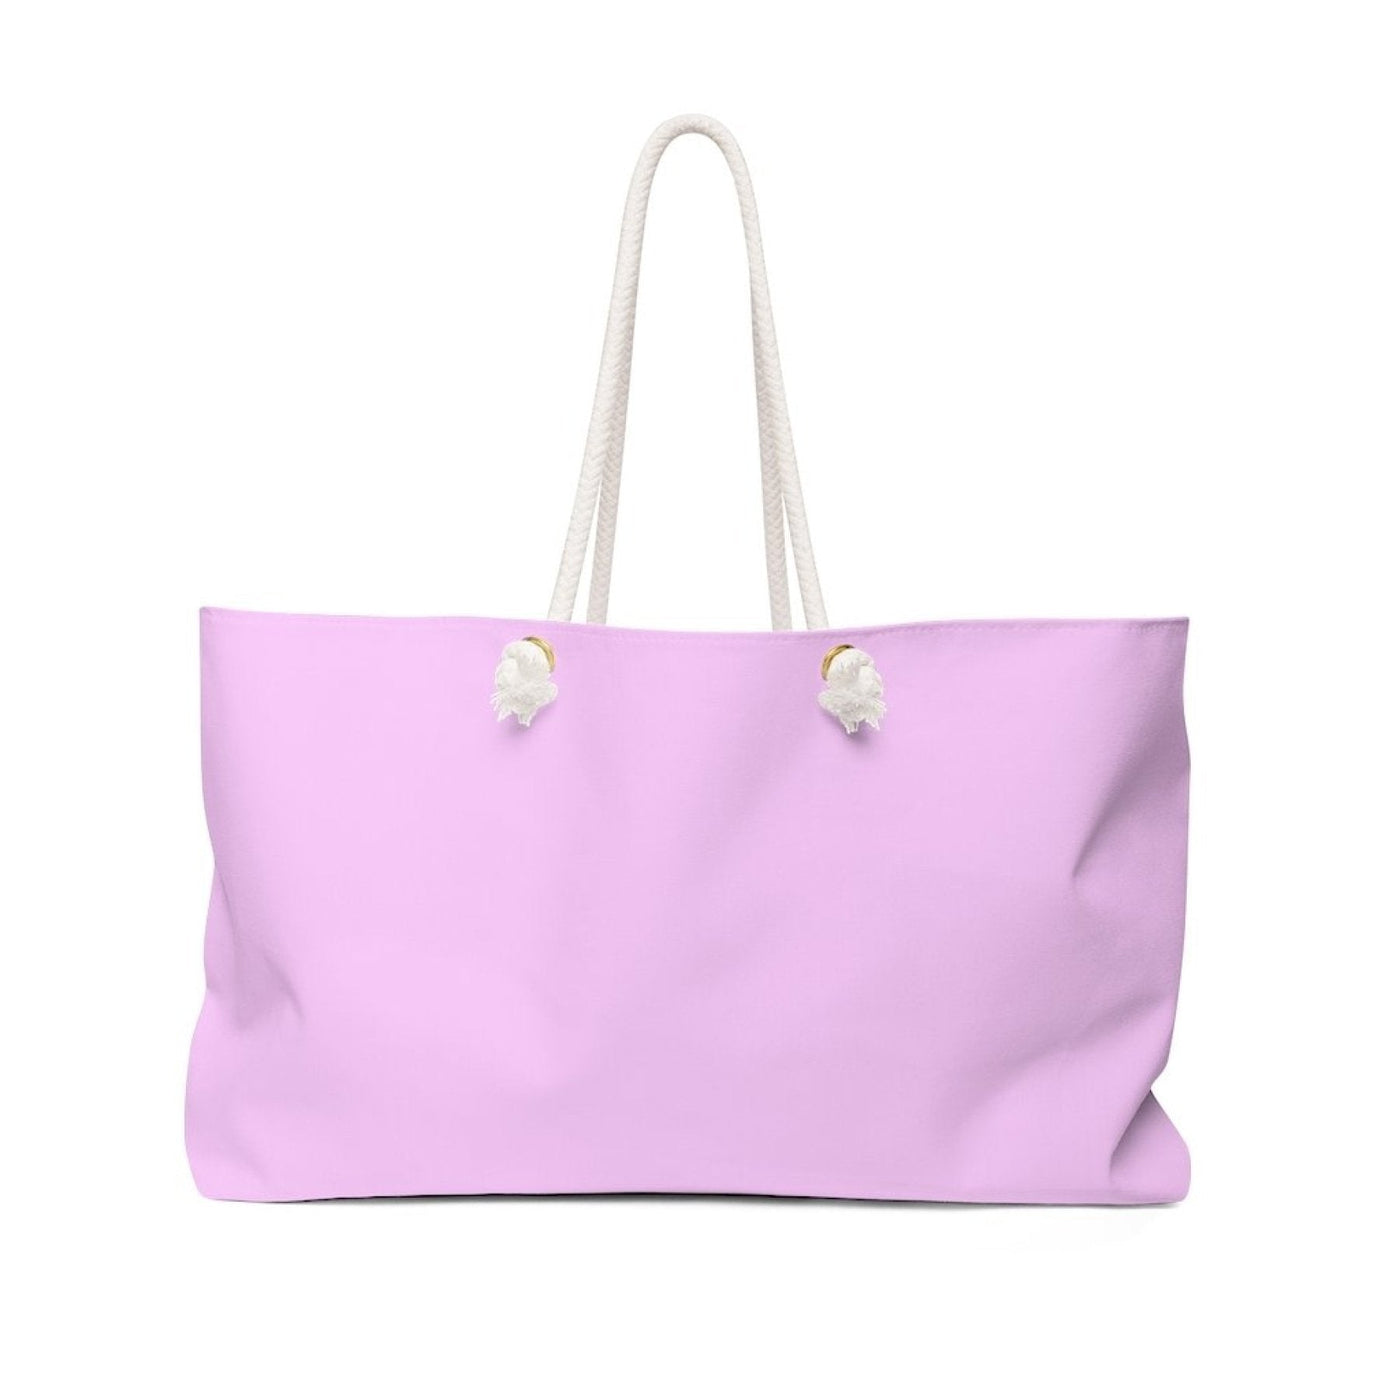 Weekender Tote Bag Light Pink - Bags | Tote Bags | Weekender